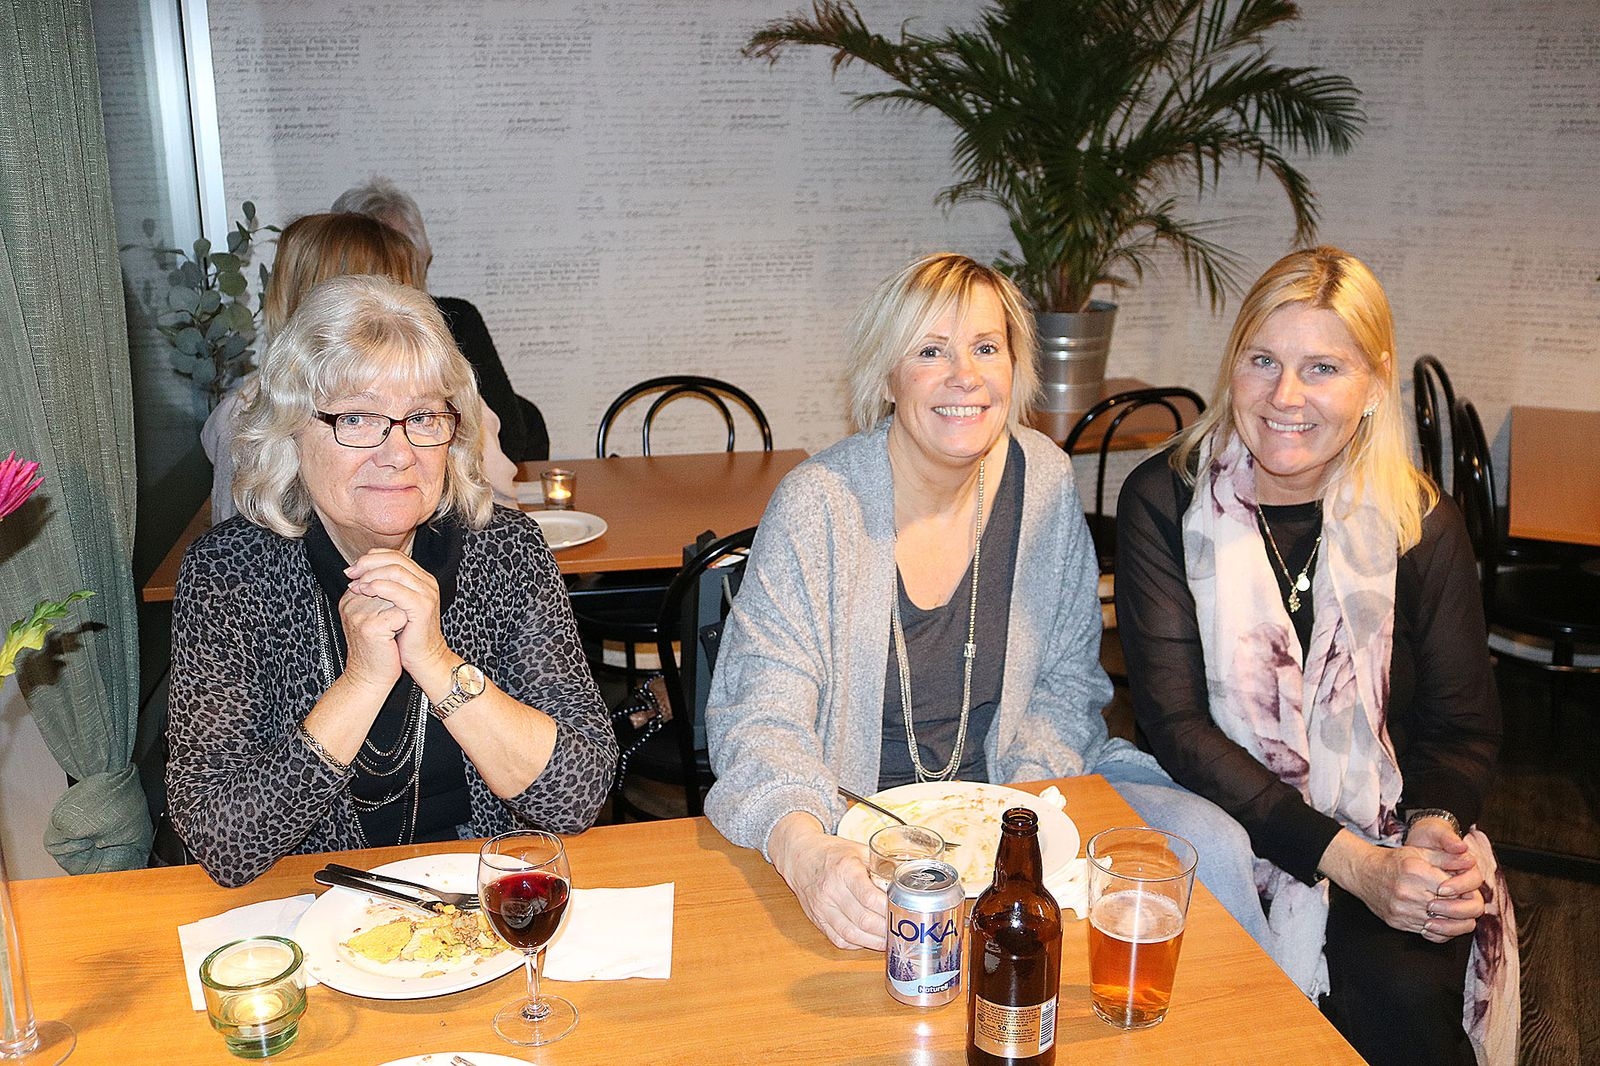 En paus för att fylla på lite näring hade Lisbeth Bengtsson, Anneli Segerdahl och Catrine Zendeli tagit på restaurangen på Köpstaden, där tacobuffén smakade bra.